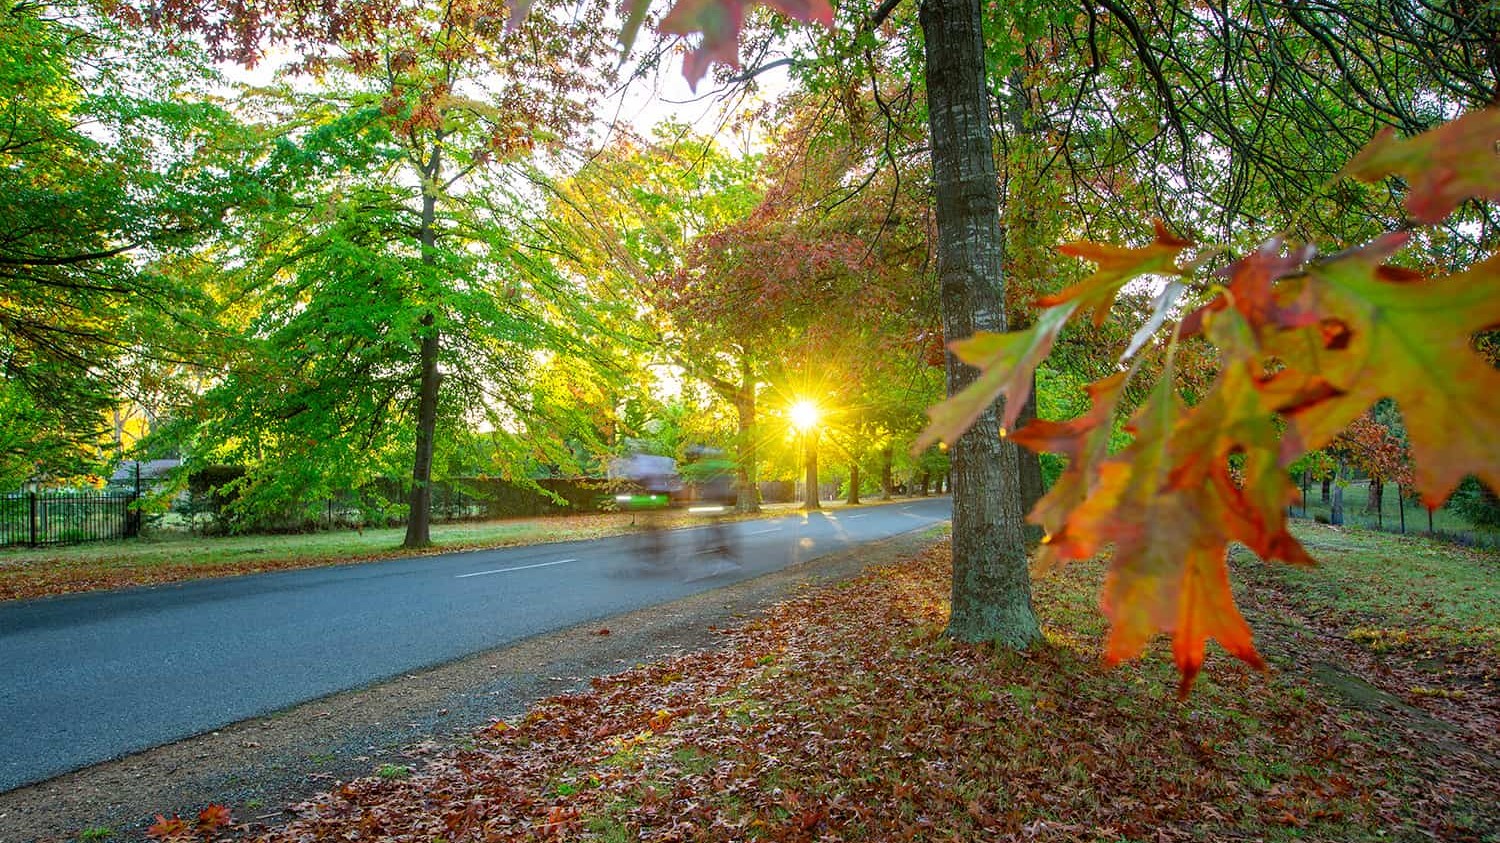 Macedon in Autumn